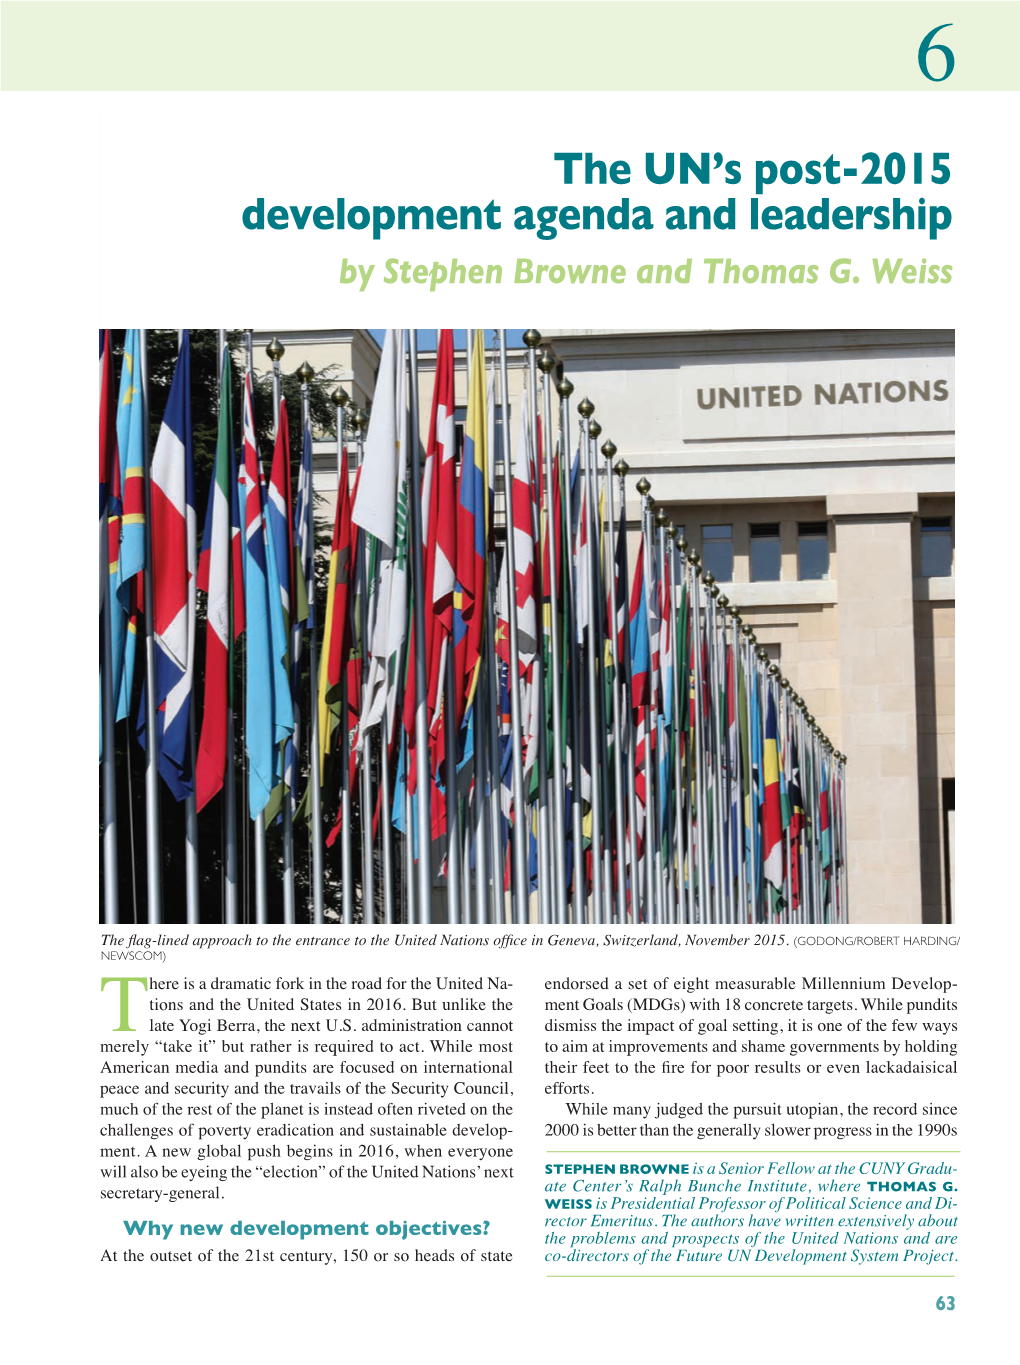 The UN's Post-2015 Development Agenda and Leadership